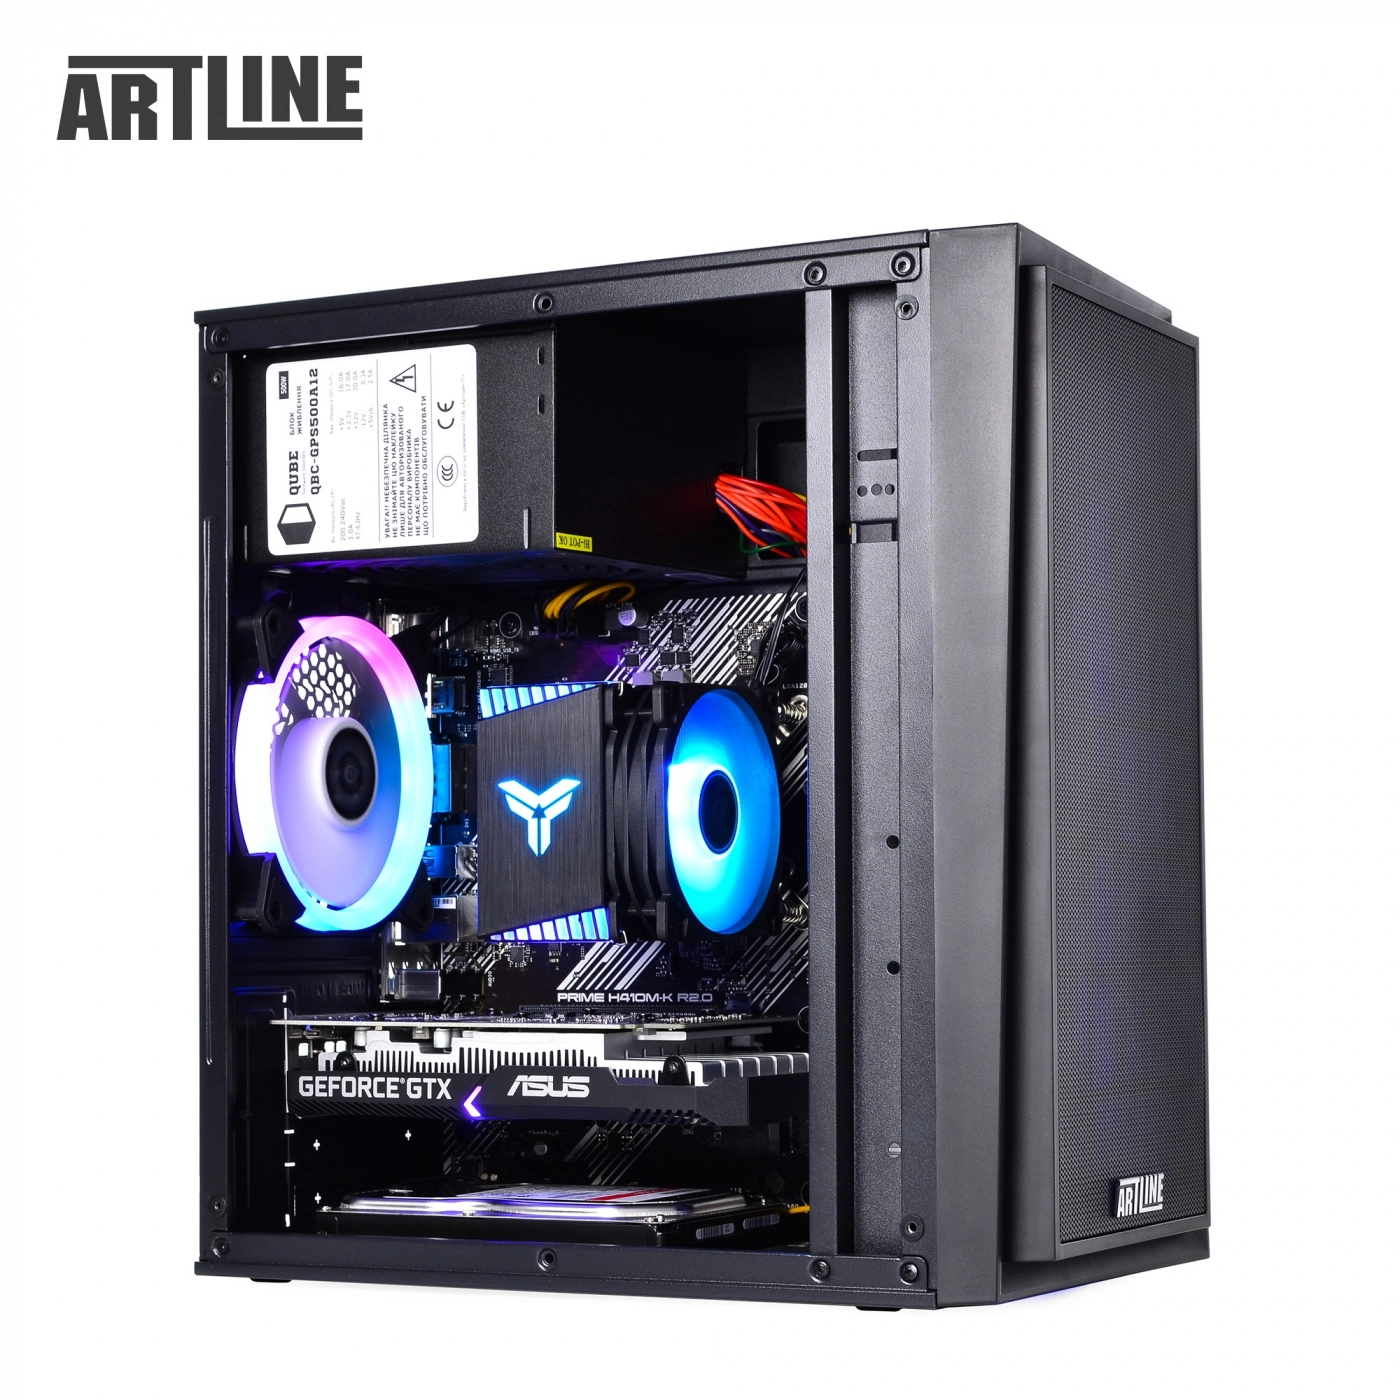 Купить Компьютер ARTLINE Gaming X43v24 - фото 13